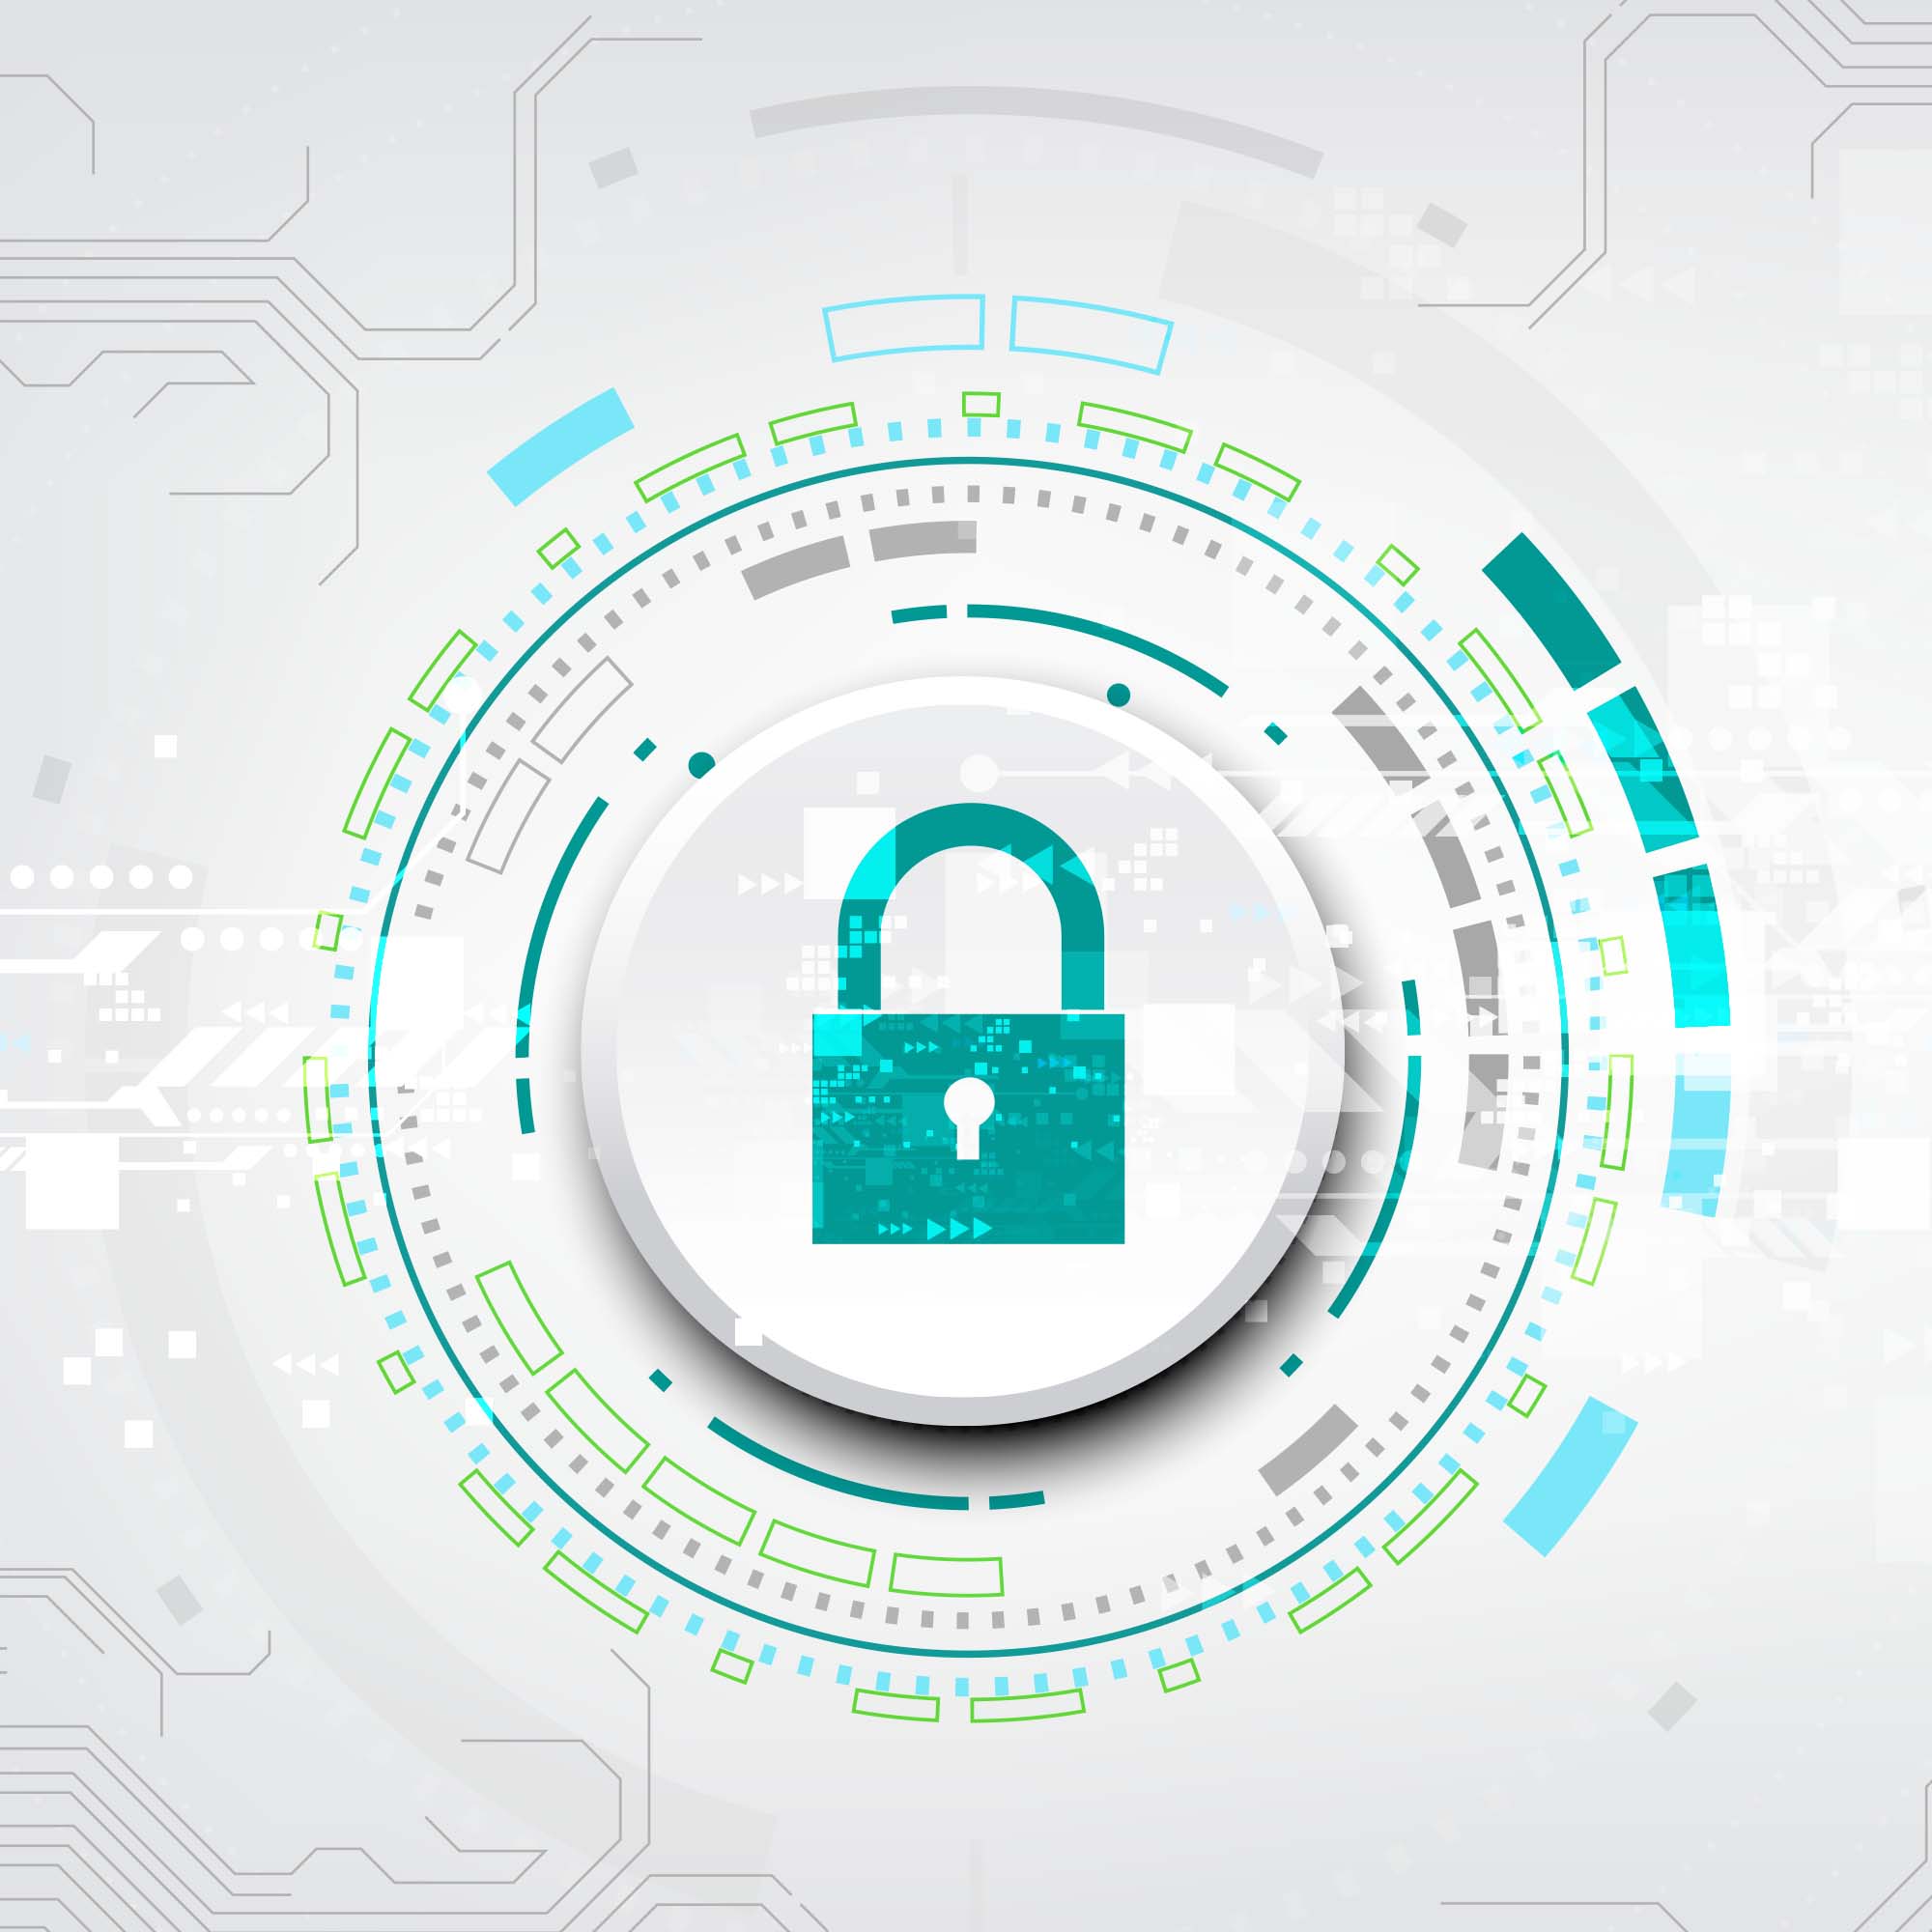 Securitatea cibernetică: la ce riscuri este expusă compania ta și ce poți face să o protejezi?